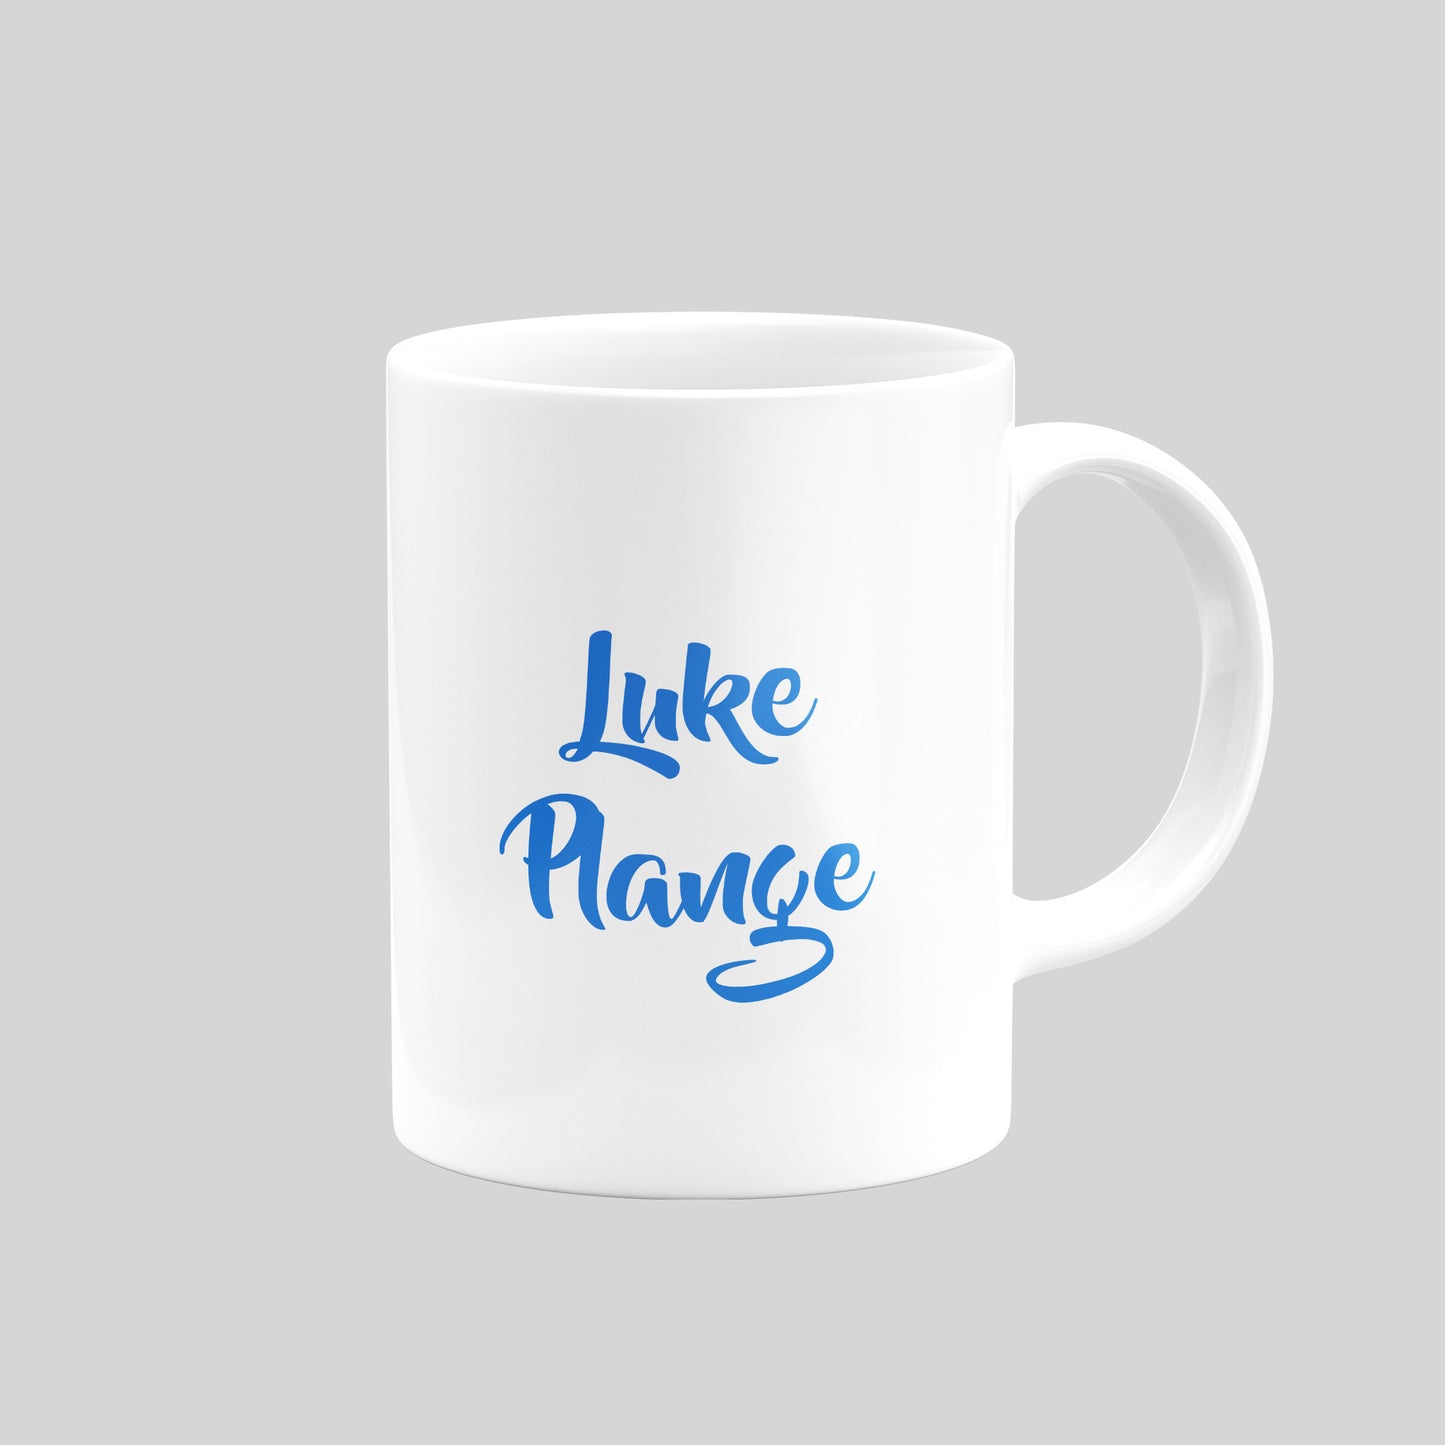 Luke Plange Mug